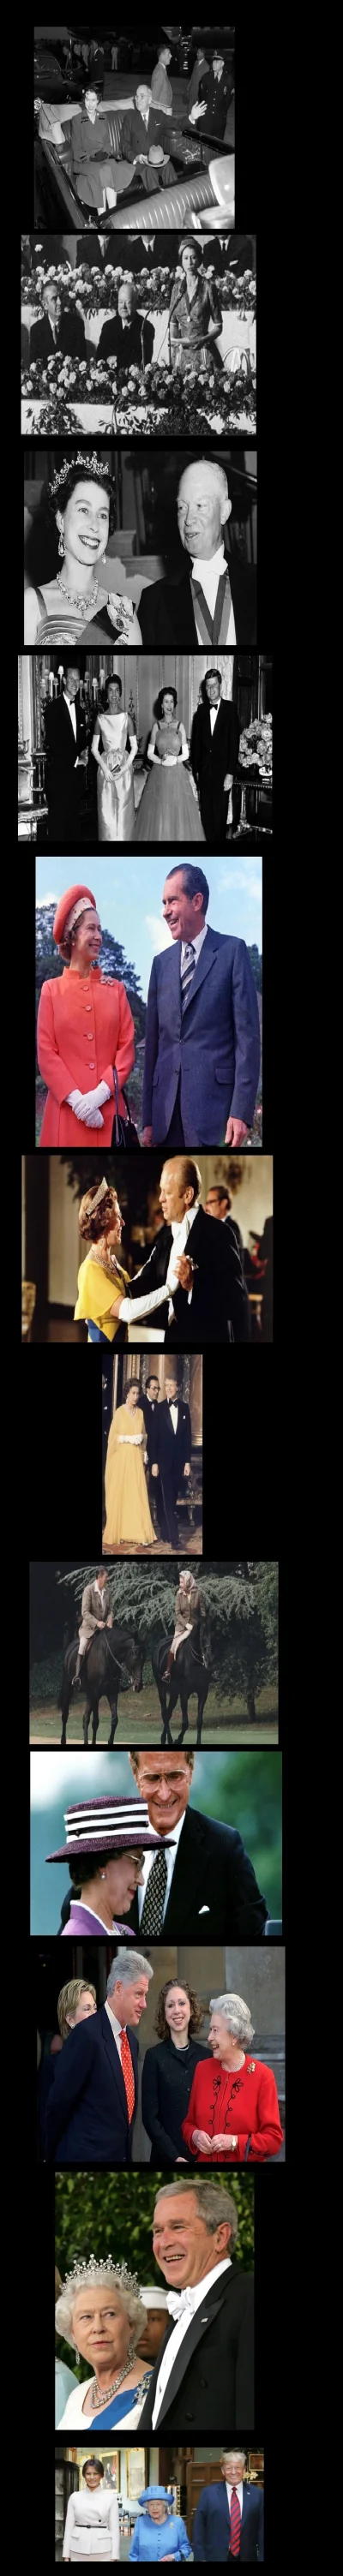 kleopatrixx - Królowa Elżbieta II na zdjęciach z 12 Prezydentami USA.
(w komentarzu ...